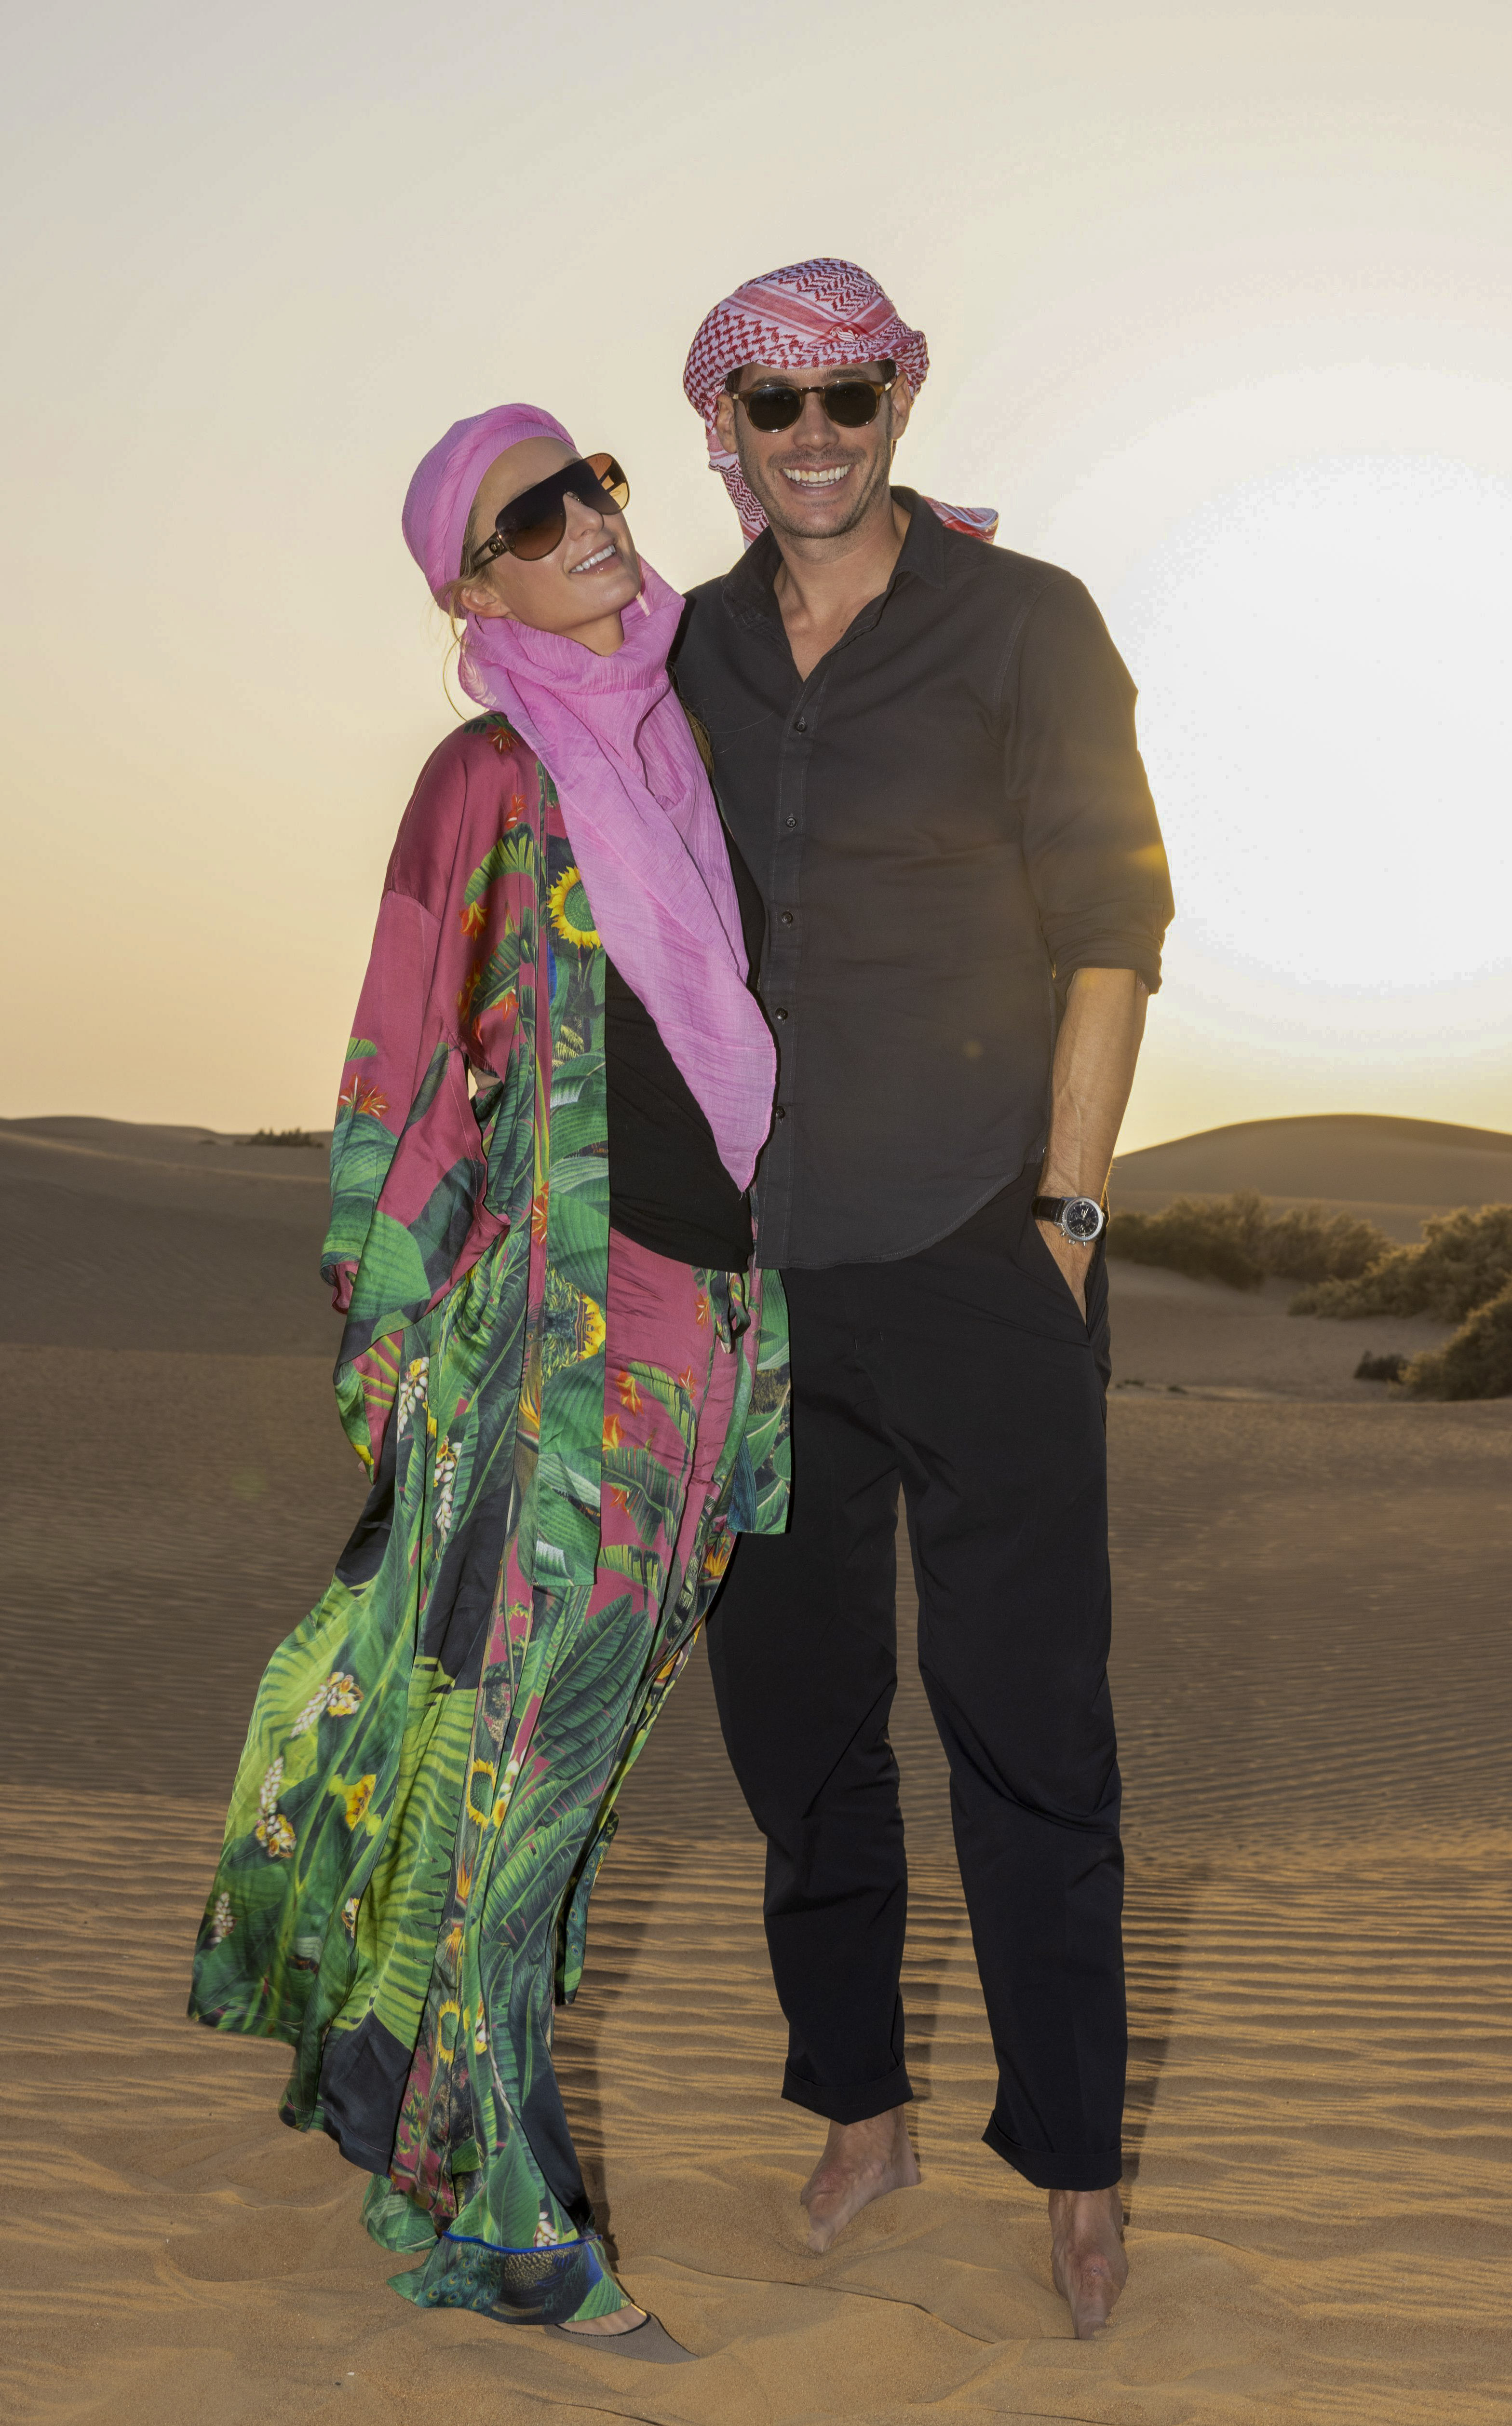 ¡Siguen de viaje! Paris Hilton y Carter Reum continúan disfrutando de su luna de miel: ahora, en Dubai. Allí aprovecharon distintas atracciones y también descansaron en un lujoso hotel (Fotos: The Grosby Group)